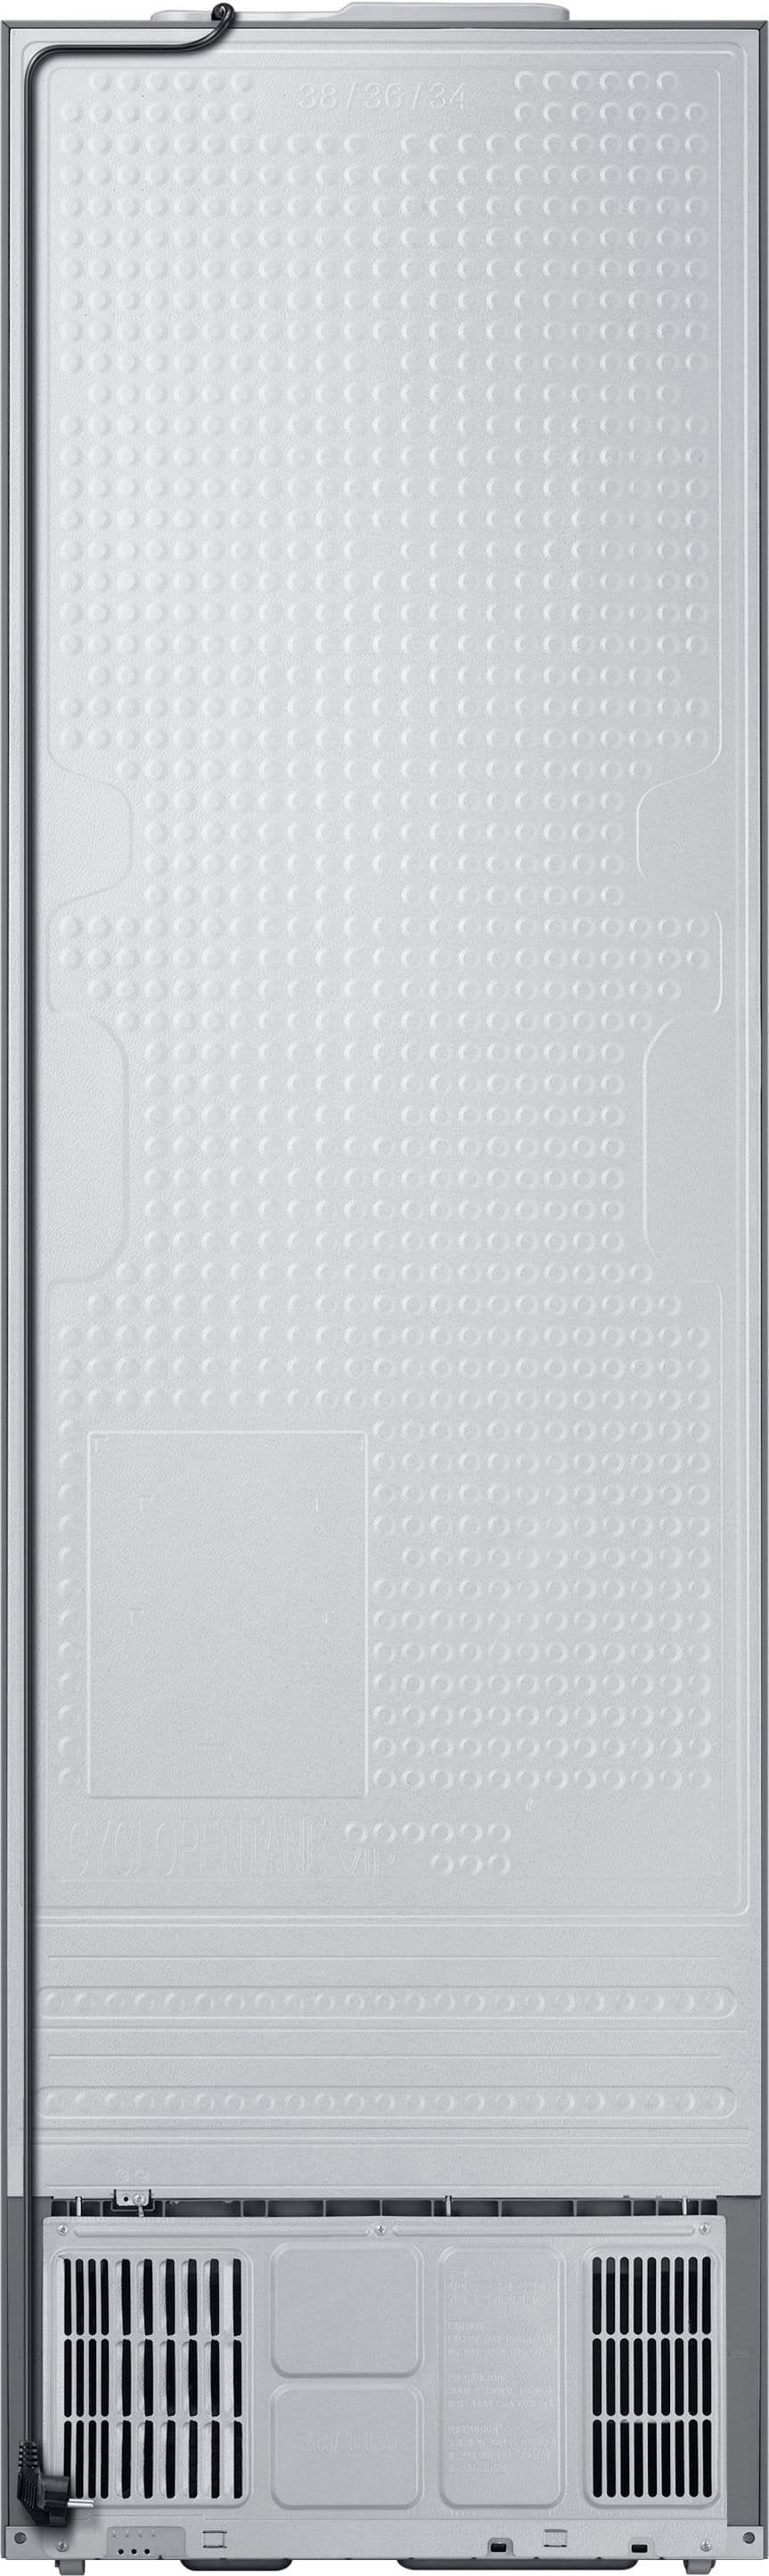 Samsung Kühl-/Gefrierkombination »RL38C600CSA«, RL38C600CSA, 203 cm hoch, 59 ,5 cm breit jetzt kaufen bei OTTO